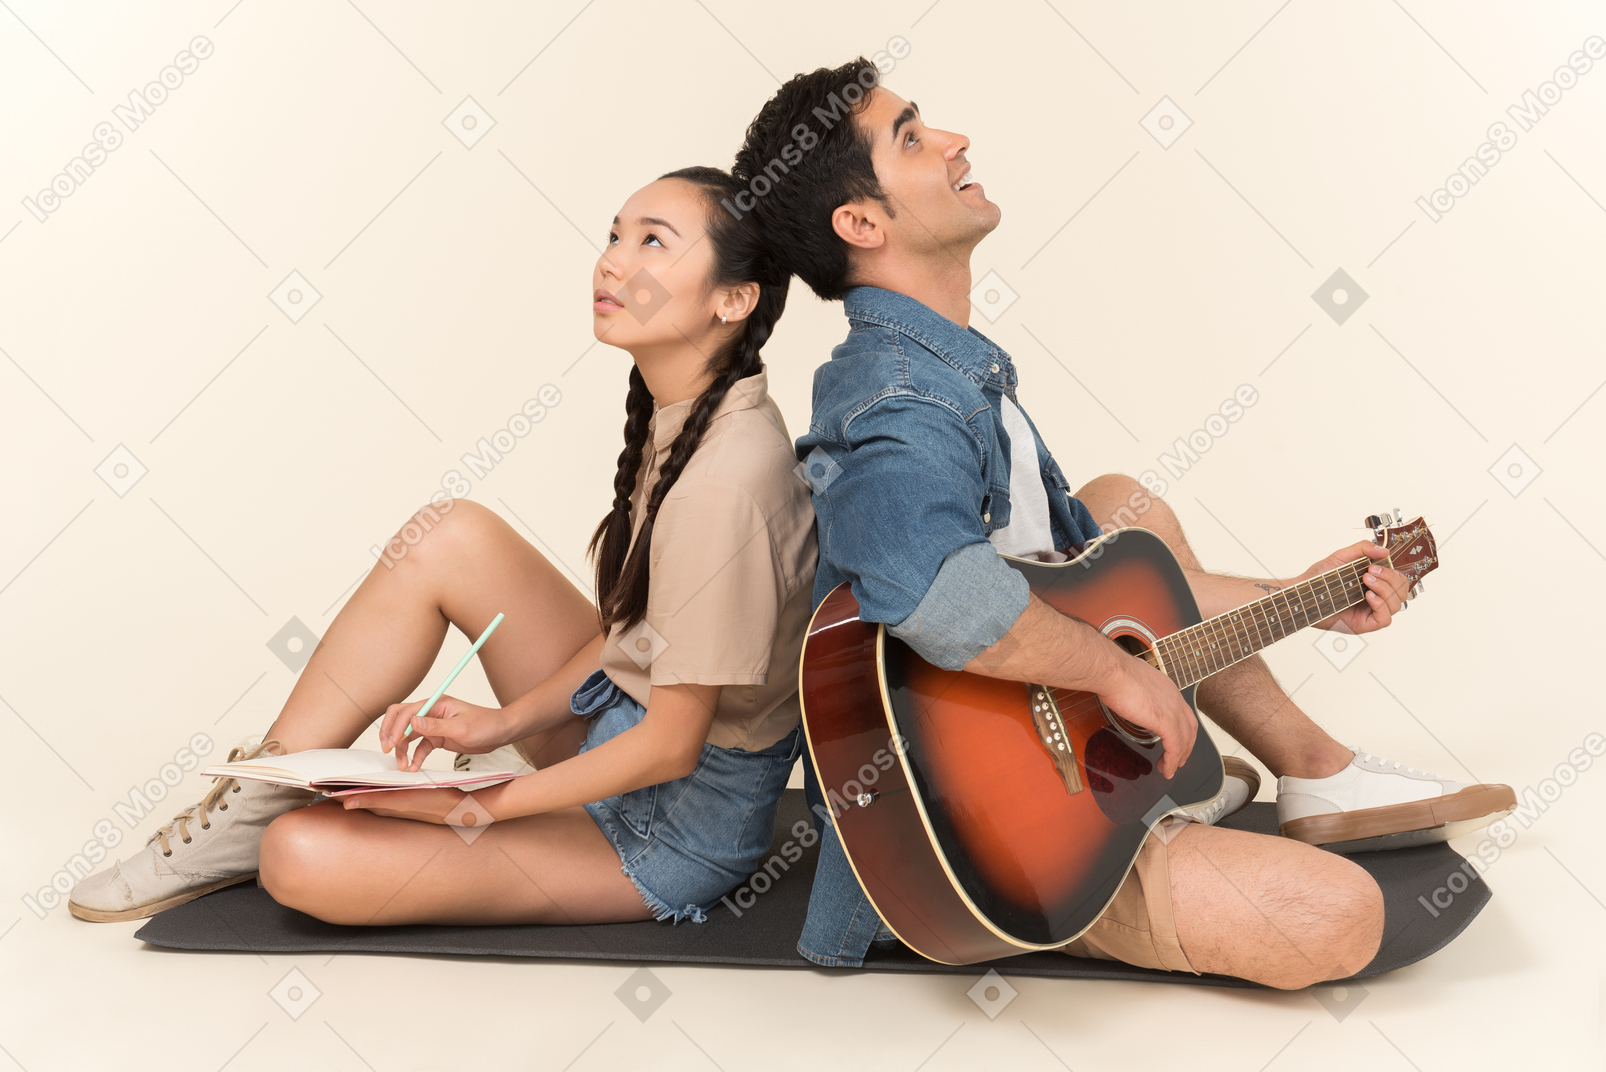 Ridere coppia interrazziale seduti schiena contro schiena e uomo a suonare la chitarra